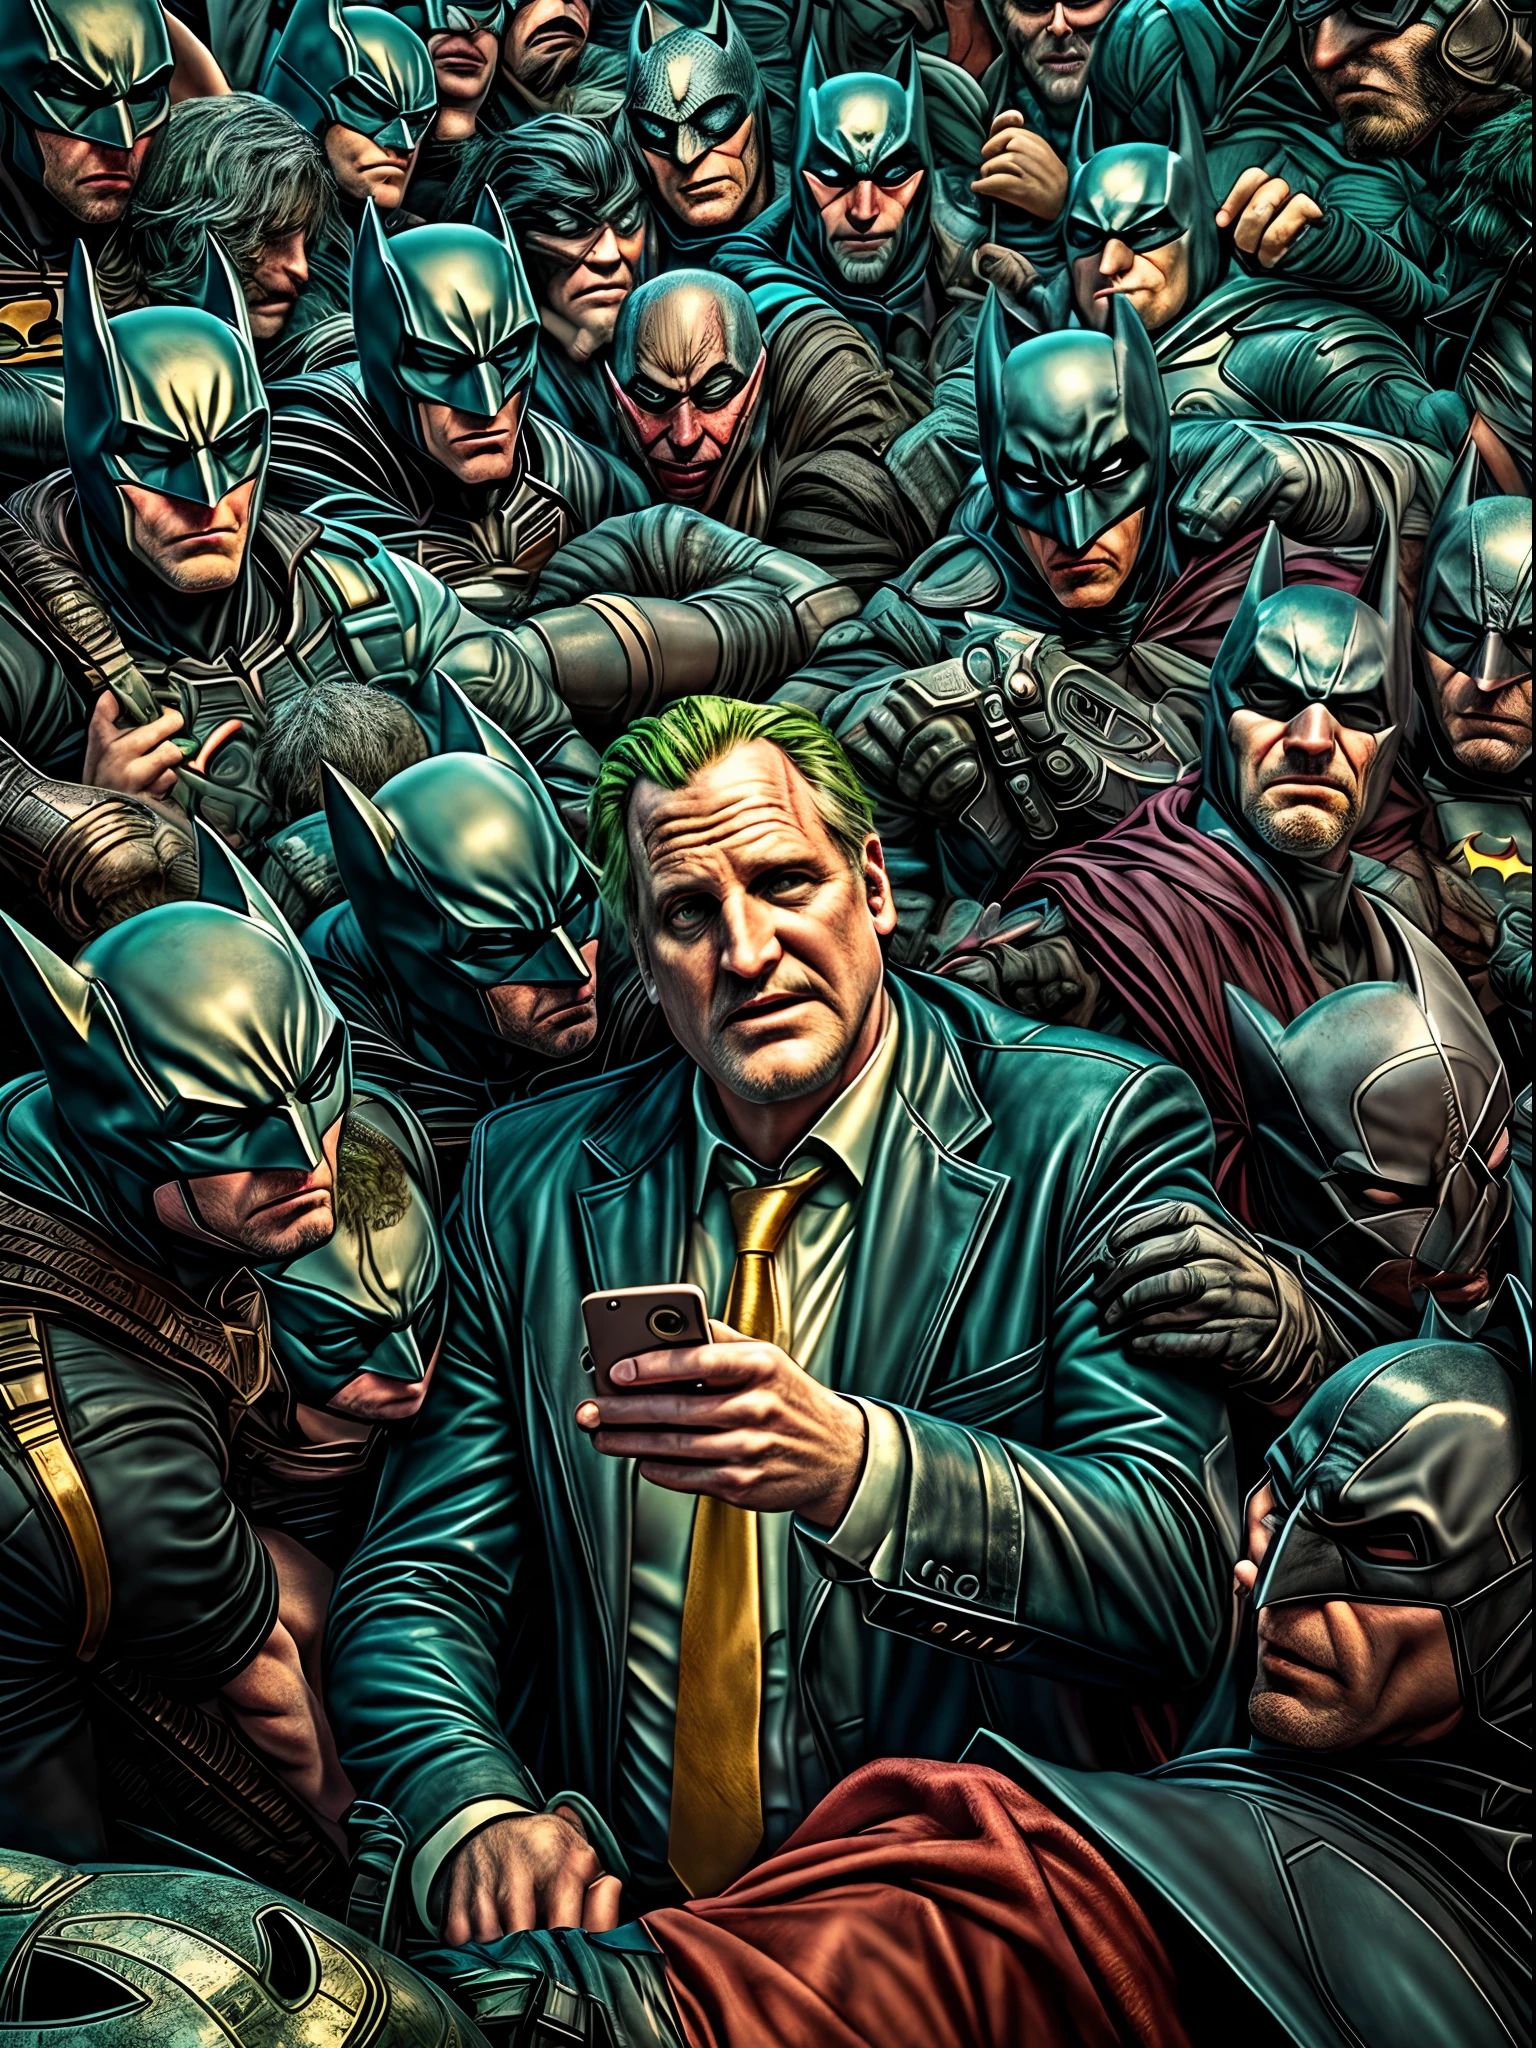 Jeff Daniels sendo selfie do Batman com fãs do Coringa. Capa preta com um logotipo dourado do Batman, Surrealismo, anáglifo, estereograma, tachi-e, pov, perspectiva atmosférica, 8K, Super Detalhe, preciso, melhor qualidade, na cidade de Gotham, tema examinado, Enquadramento perfeito, arte Moderna, Gravata roxa, cara séria, fundo complexo, [[Blaack e Ouro]], atmosfera cinza ardósia, iluminação perfeita, sombreamento perfeito, (photorealista:1.6), épico, realista, desaparecido, cores neutras, ((((HDR)))), ((((cores suaves)))), Intrincado scene, por bugmAIster, estação de arte, hiperdetalhado, tomada cinematográfica, luzes quentes, Luz dramática, Intrincado details, vinheta, renderização de octanagem, motor irreal, Altamente detalhado, Intrincado